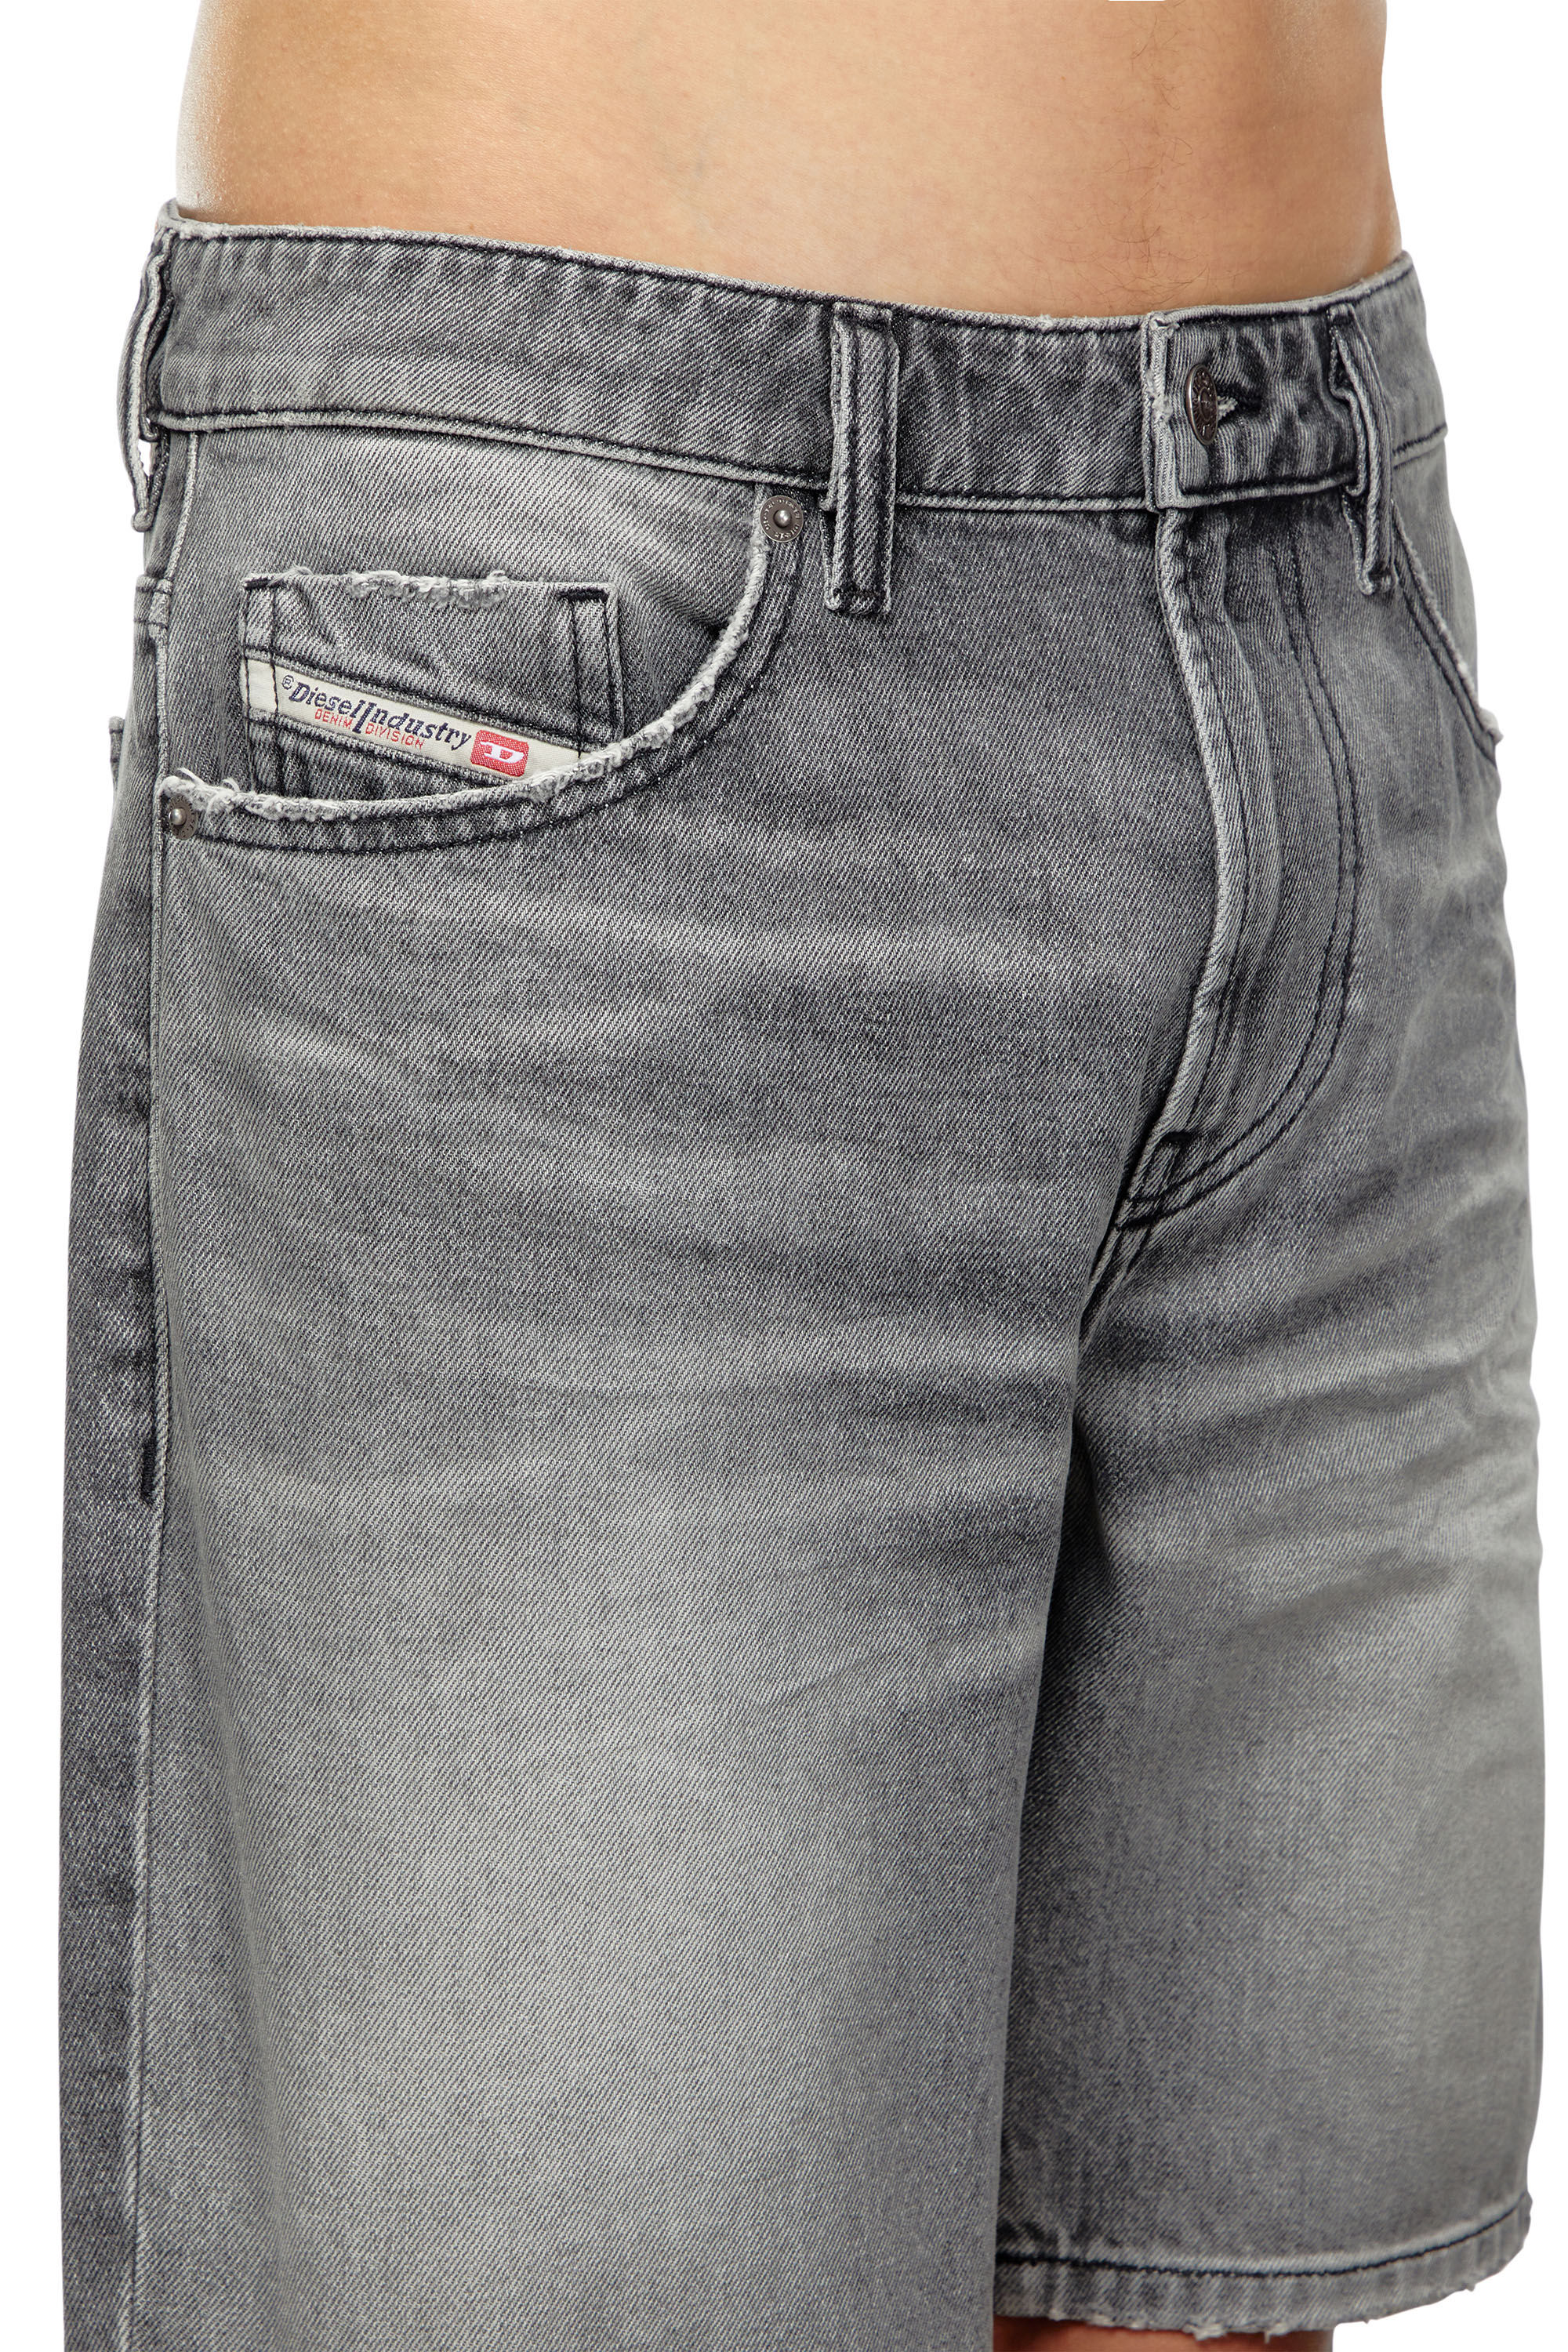 Diesel - D-FIN, Hombre Pantalones cortos vaqueros slim in Gris - Image 5